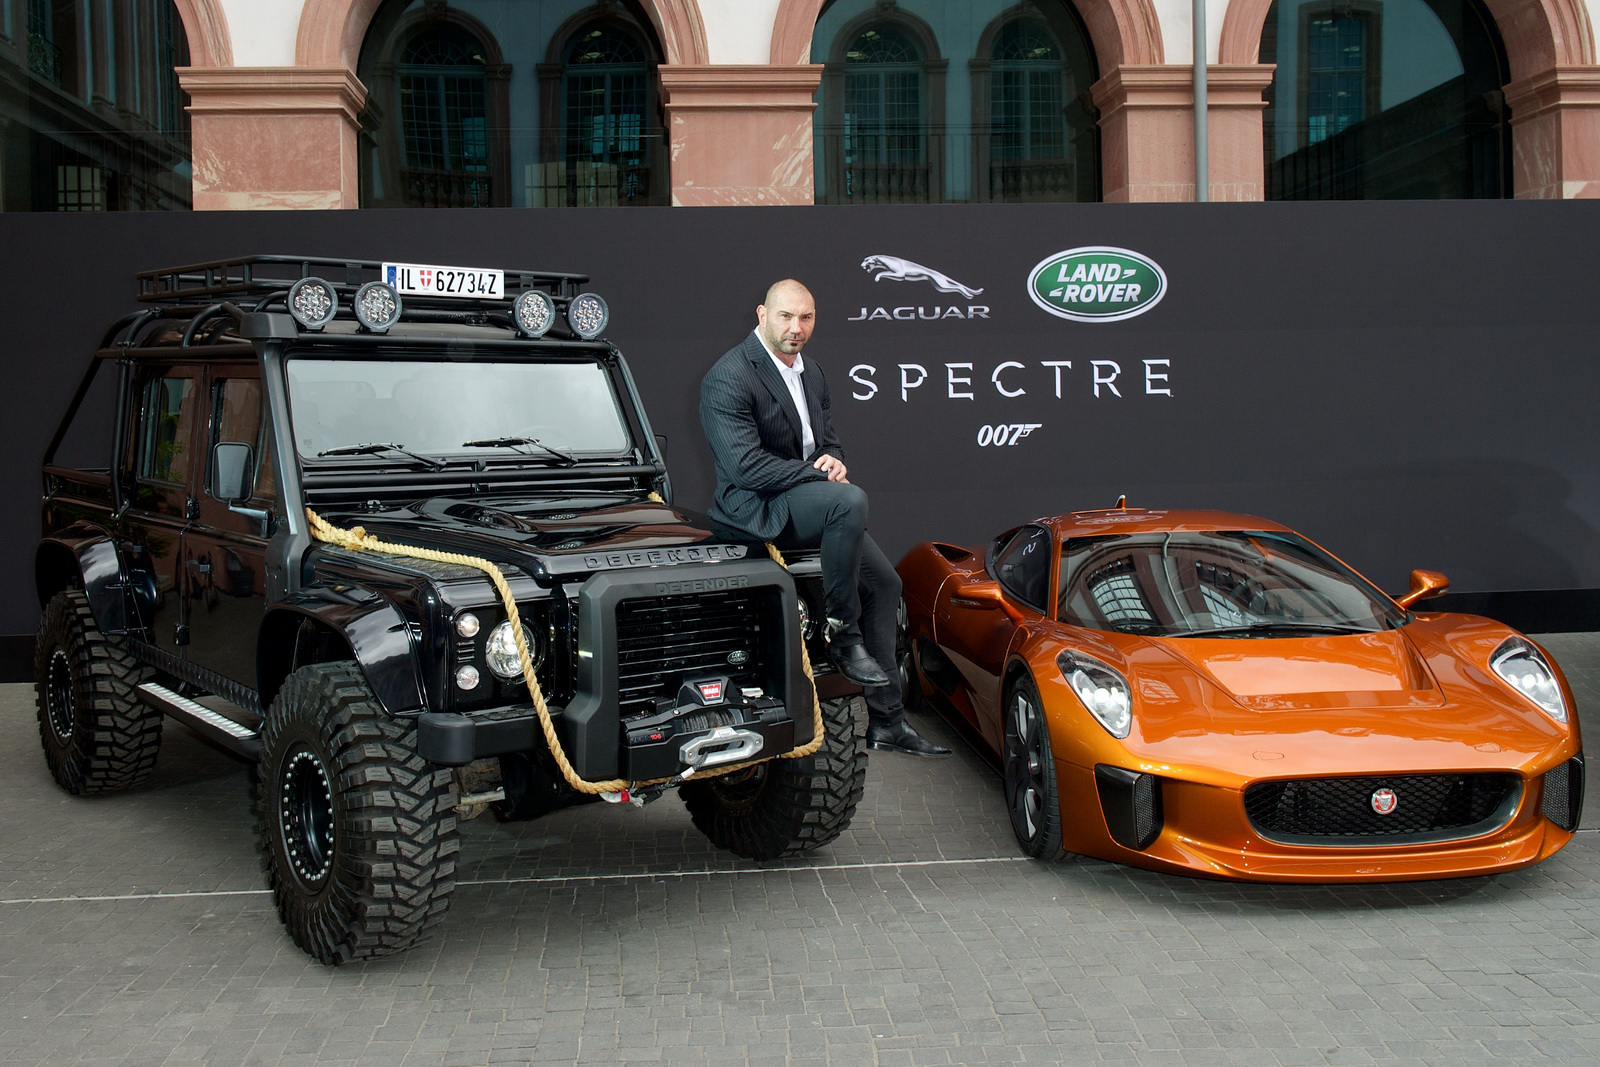 Bộ ba xế khủng trong “Điệp viên 007: Spectre” xuất hiện tại Frankfurt